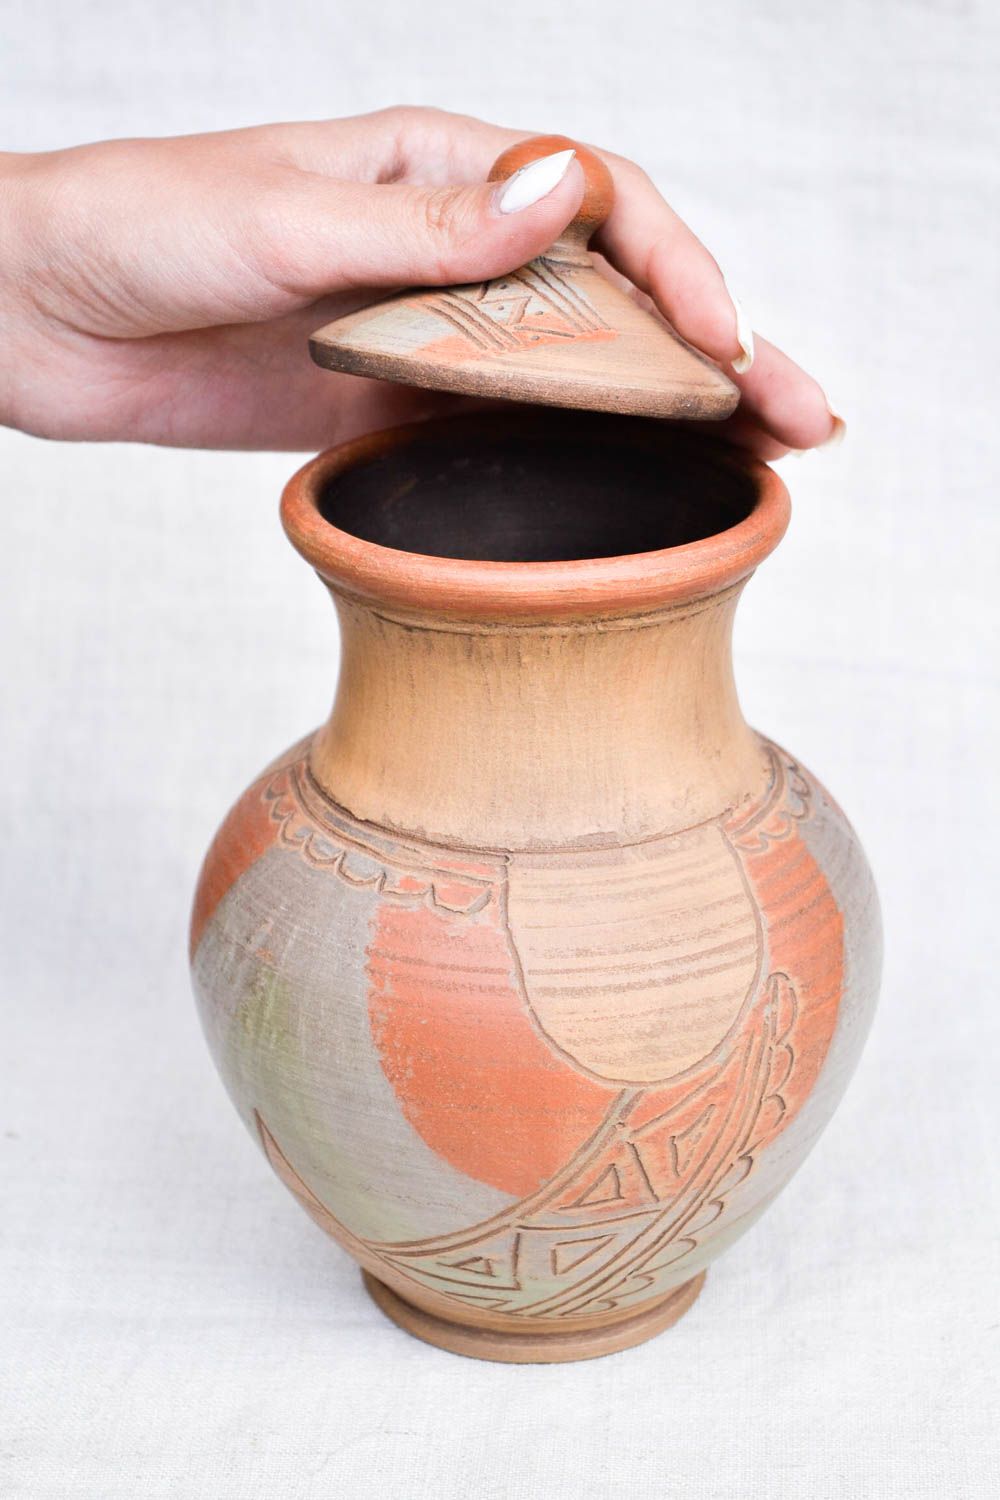 60 oz handmade ceramic milk pitcher in ethnic design 1,65 lb photo 2